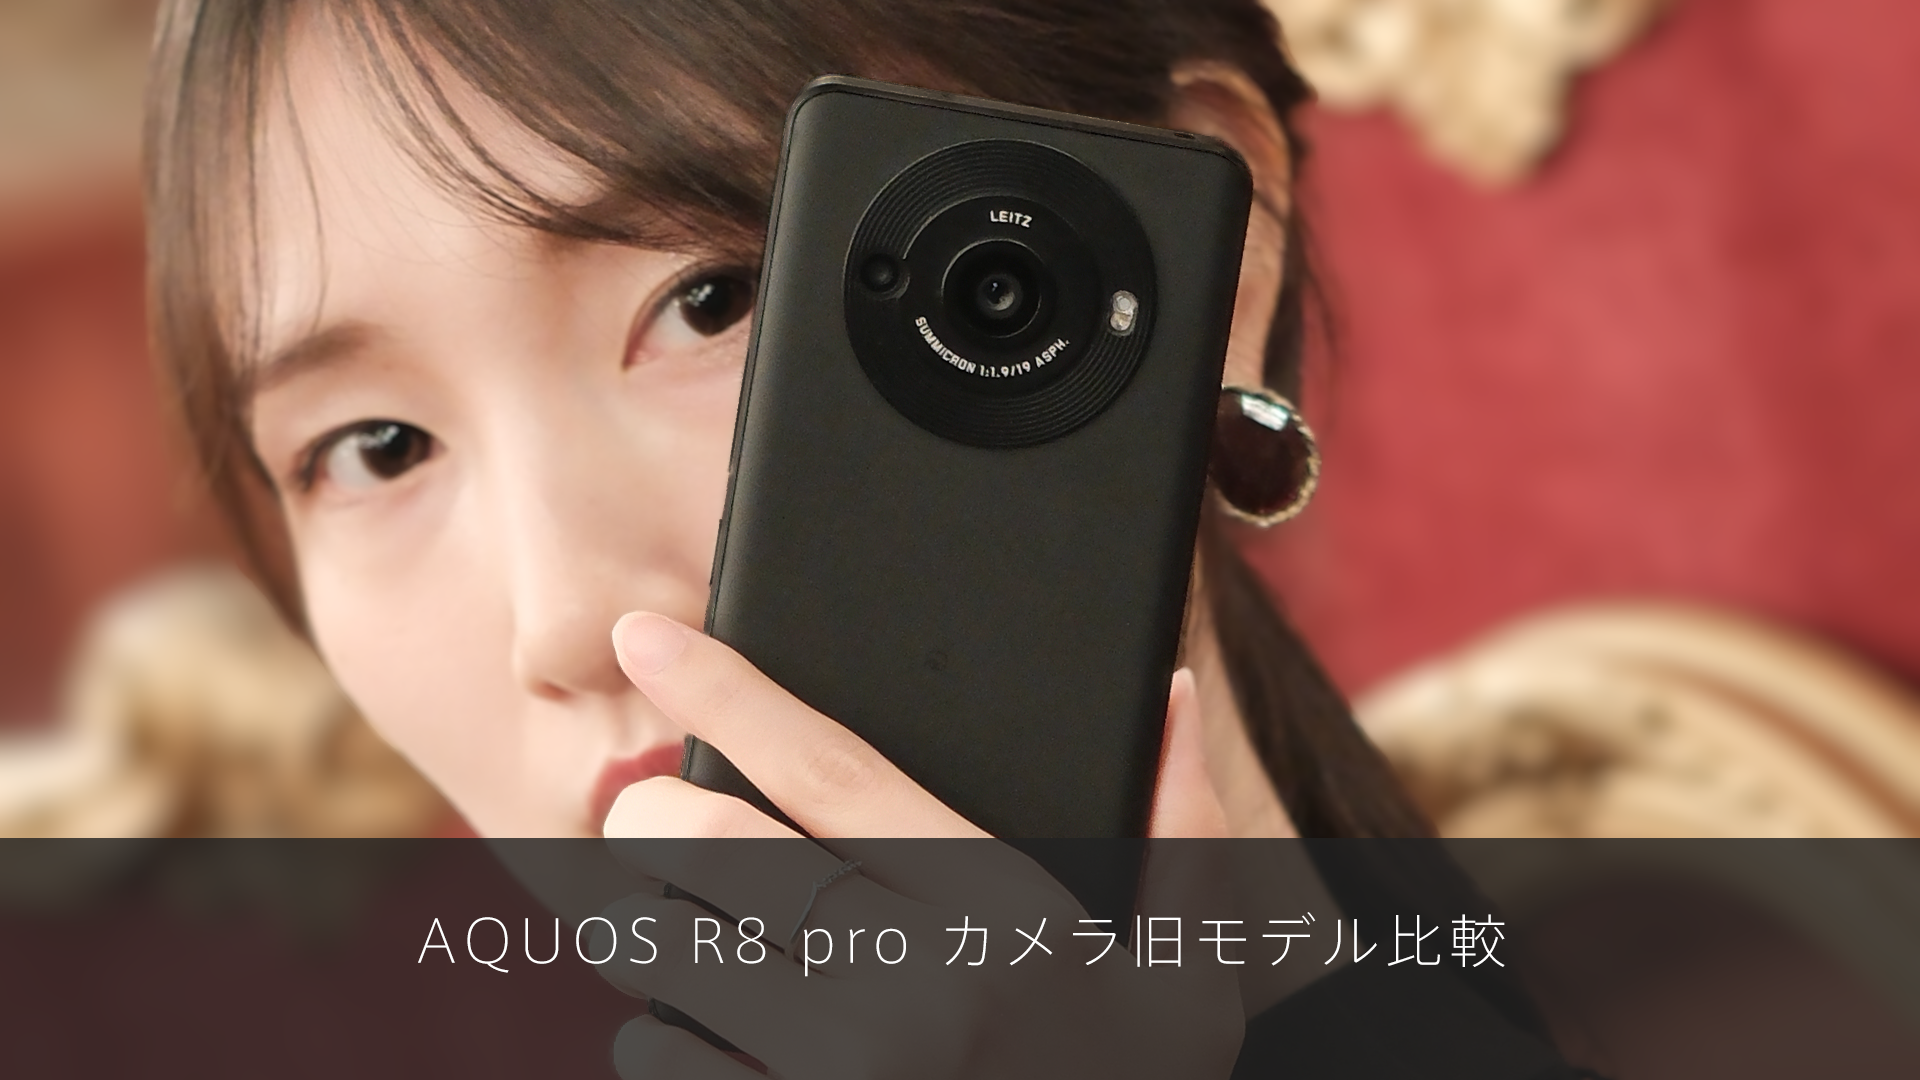 AQUOS R8 pro カメラ旧モデル比較